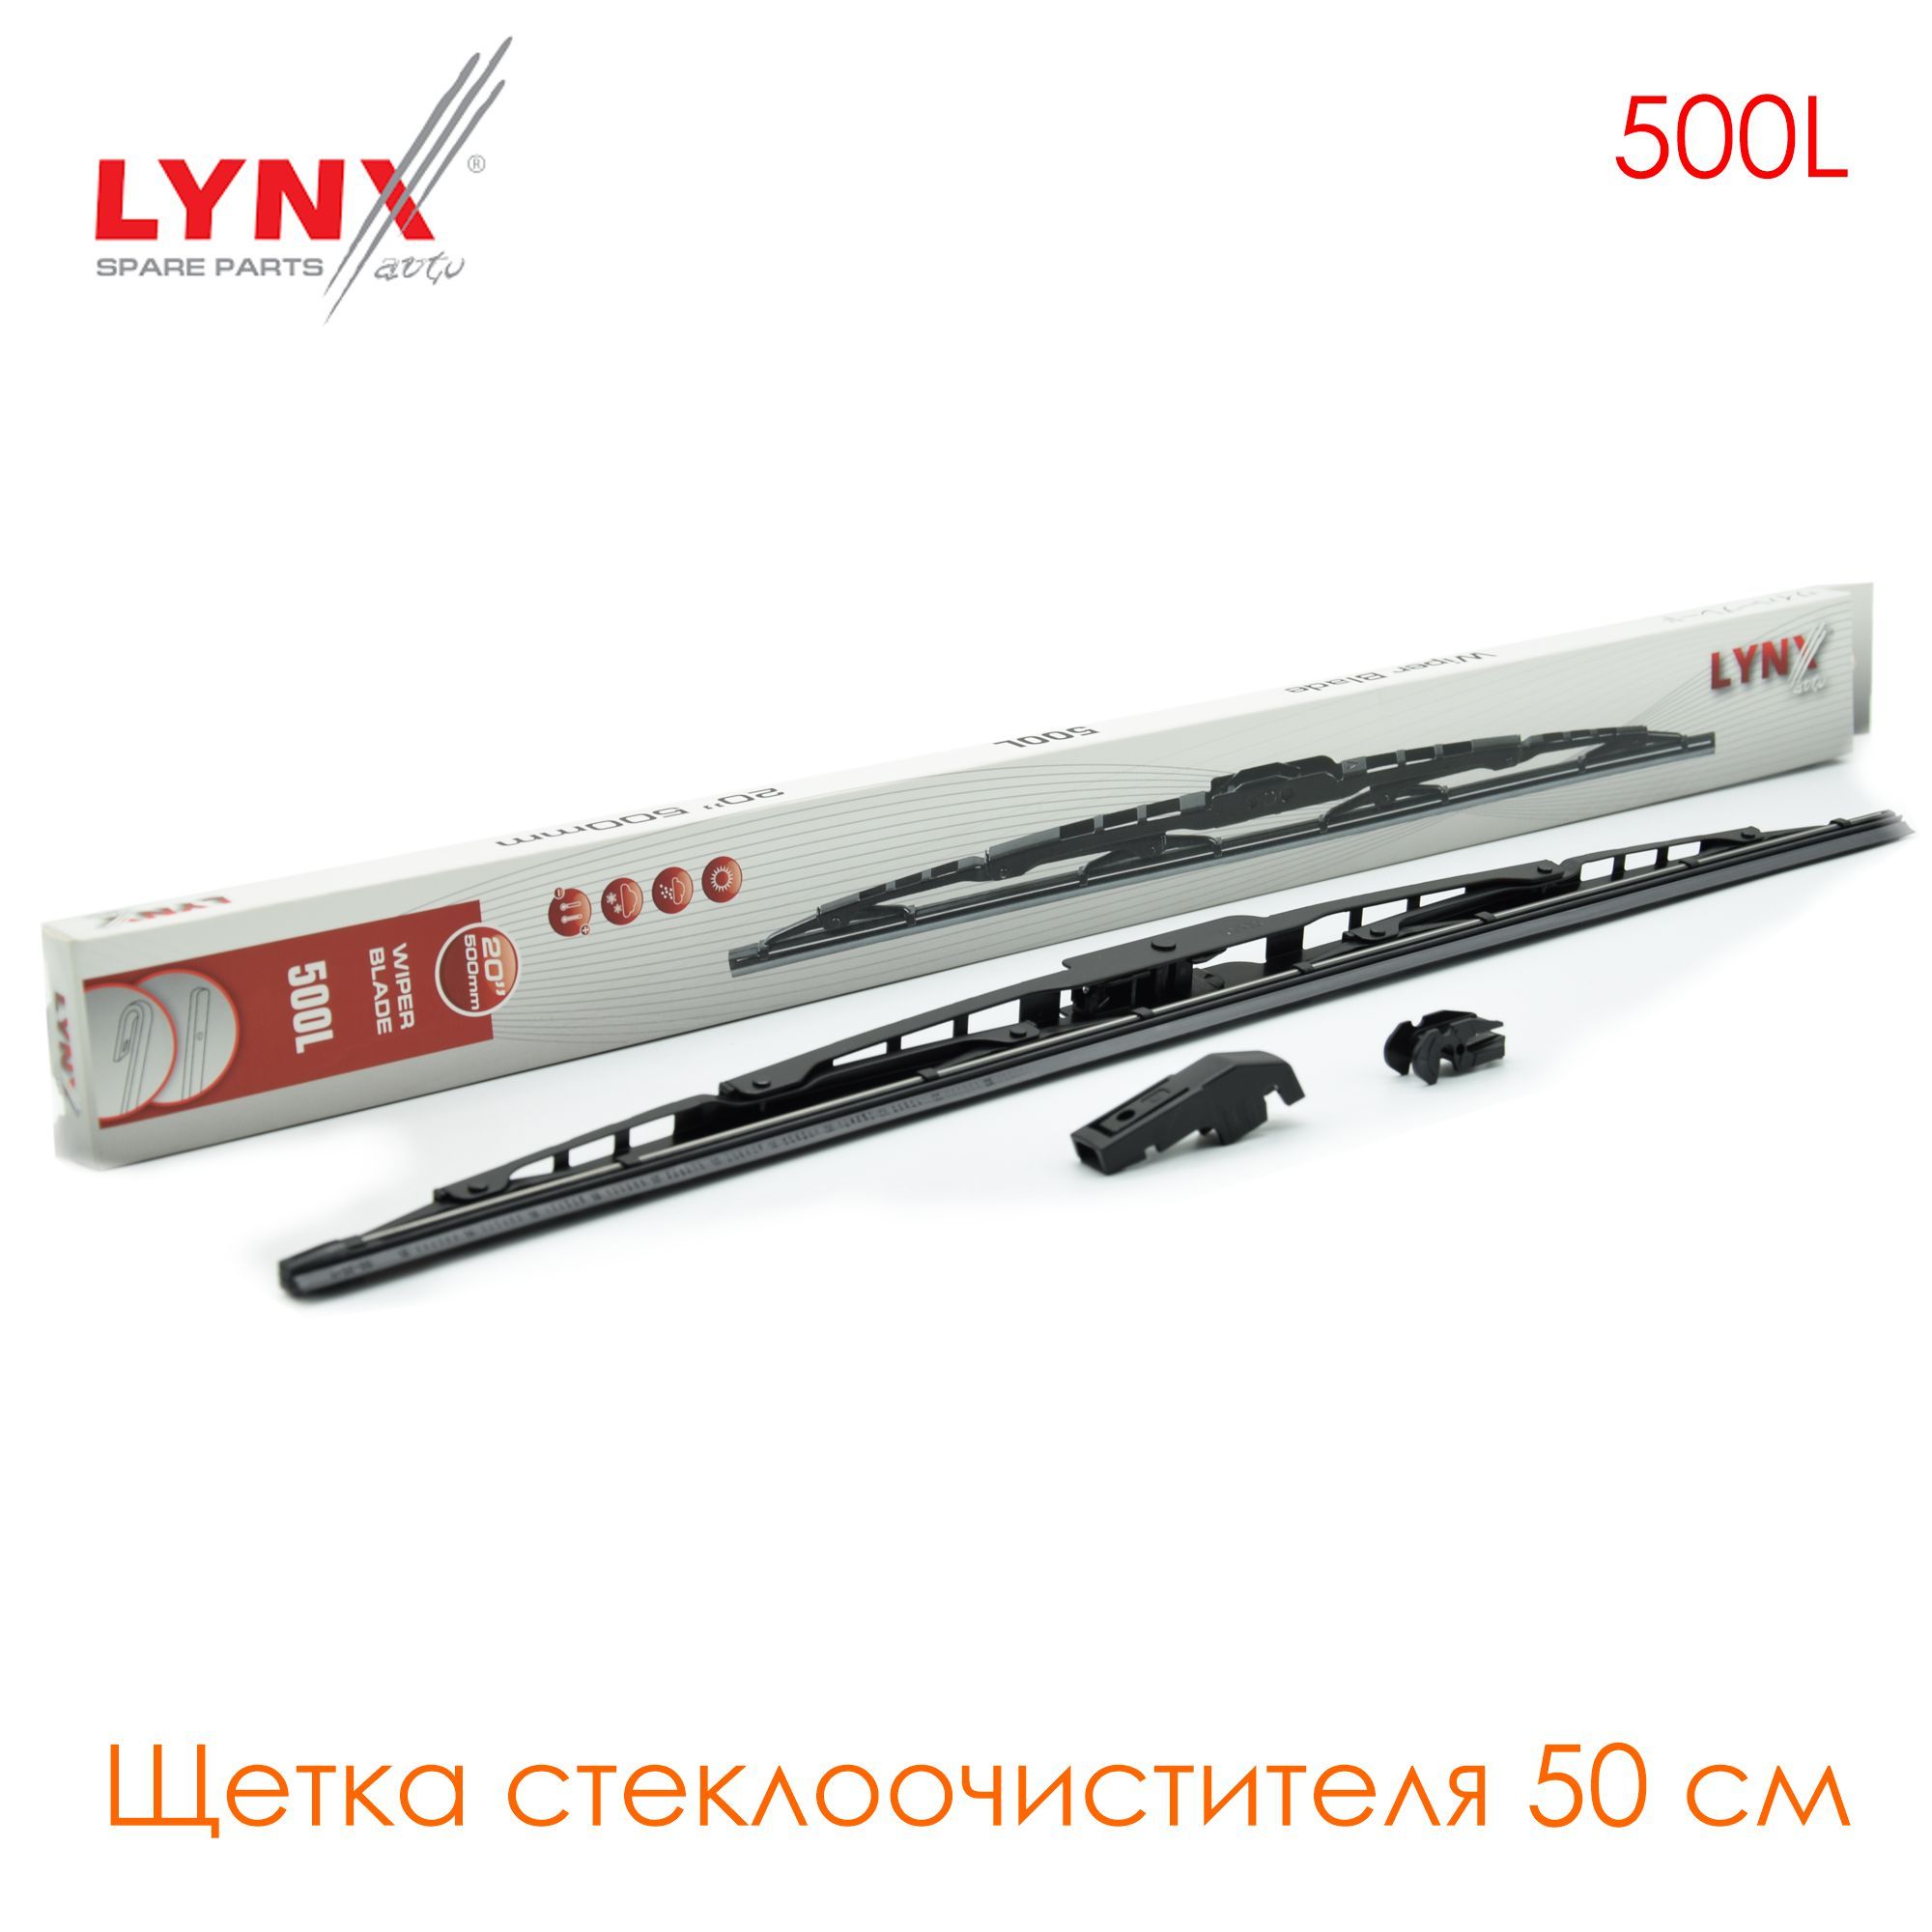 Производитель lynx отзывы. Щетка стеклоочистителя Lynx 500l. К-кт щеток стеклоочистителя Lynx 500мм. Каркасная щетка Lynx. Lynx : 500l.